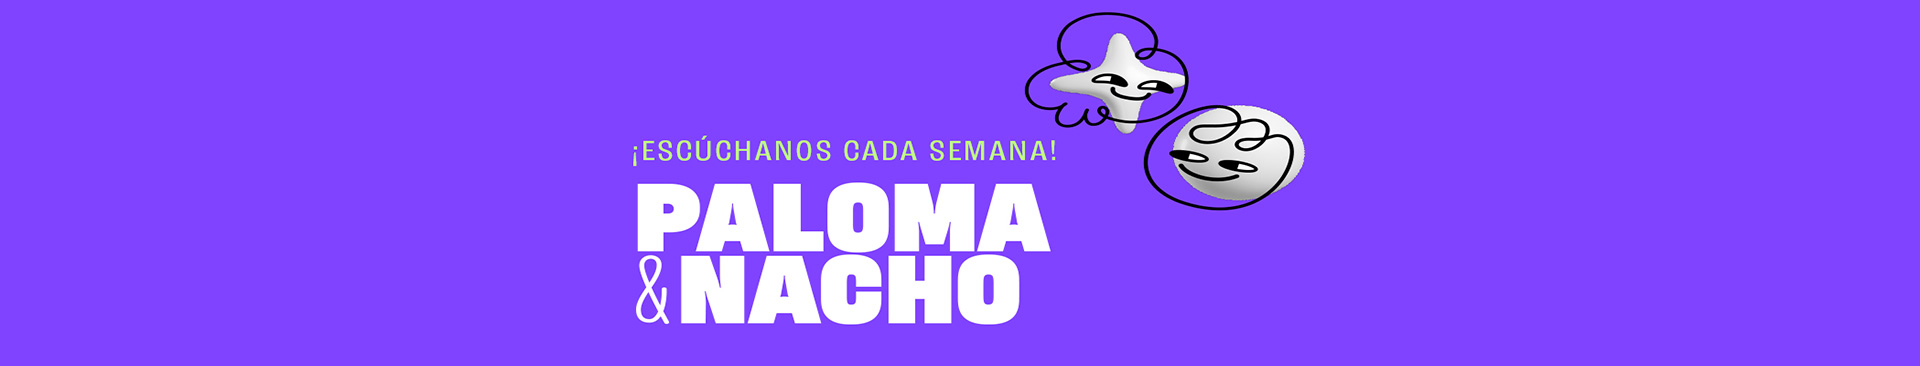 Paloma y Nacho